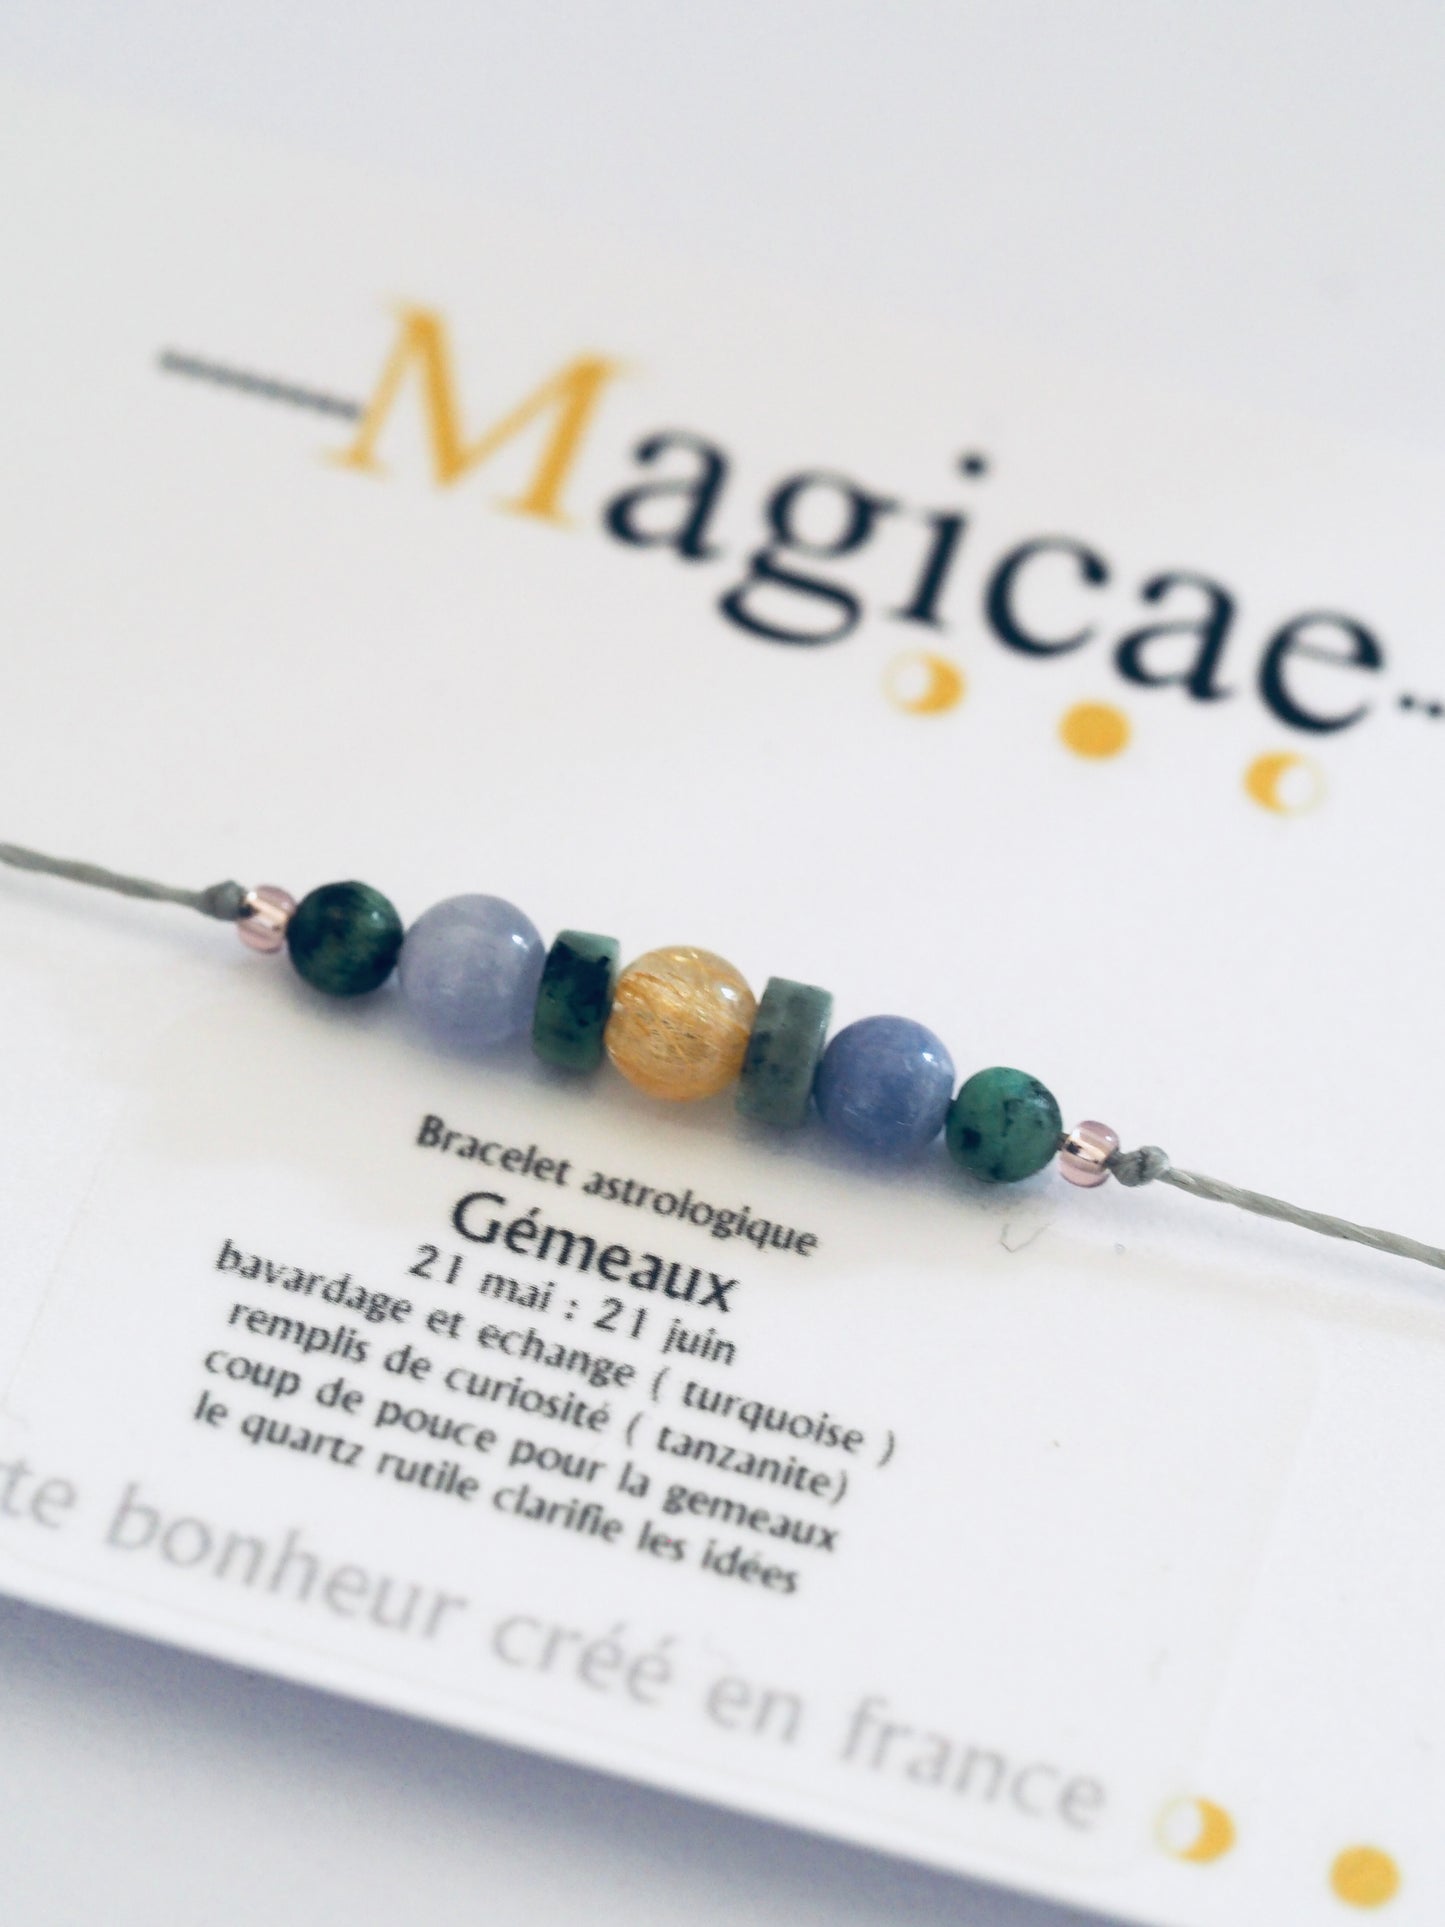 Bracelet astrologique gémeaux - Magicae